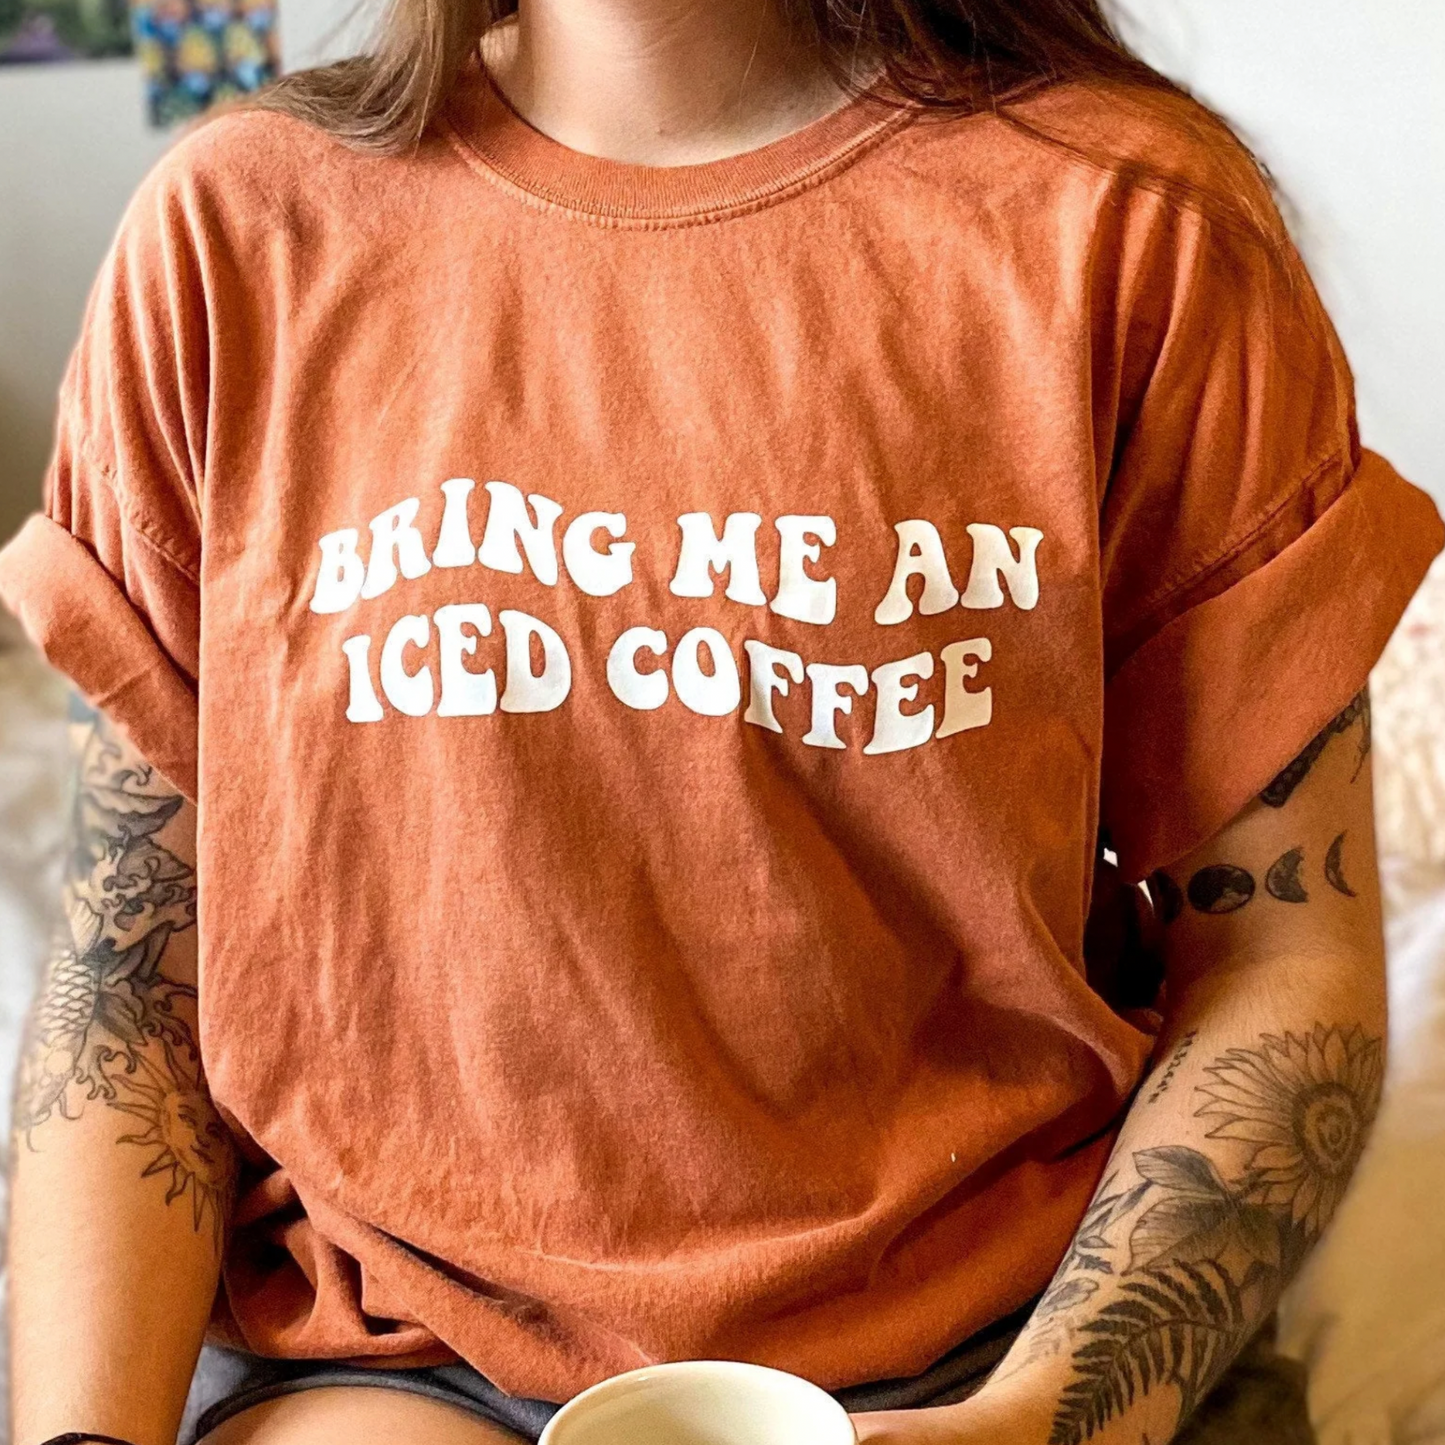 Bring Me an Iced Coffee Tee